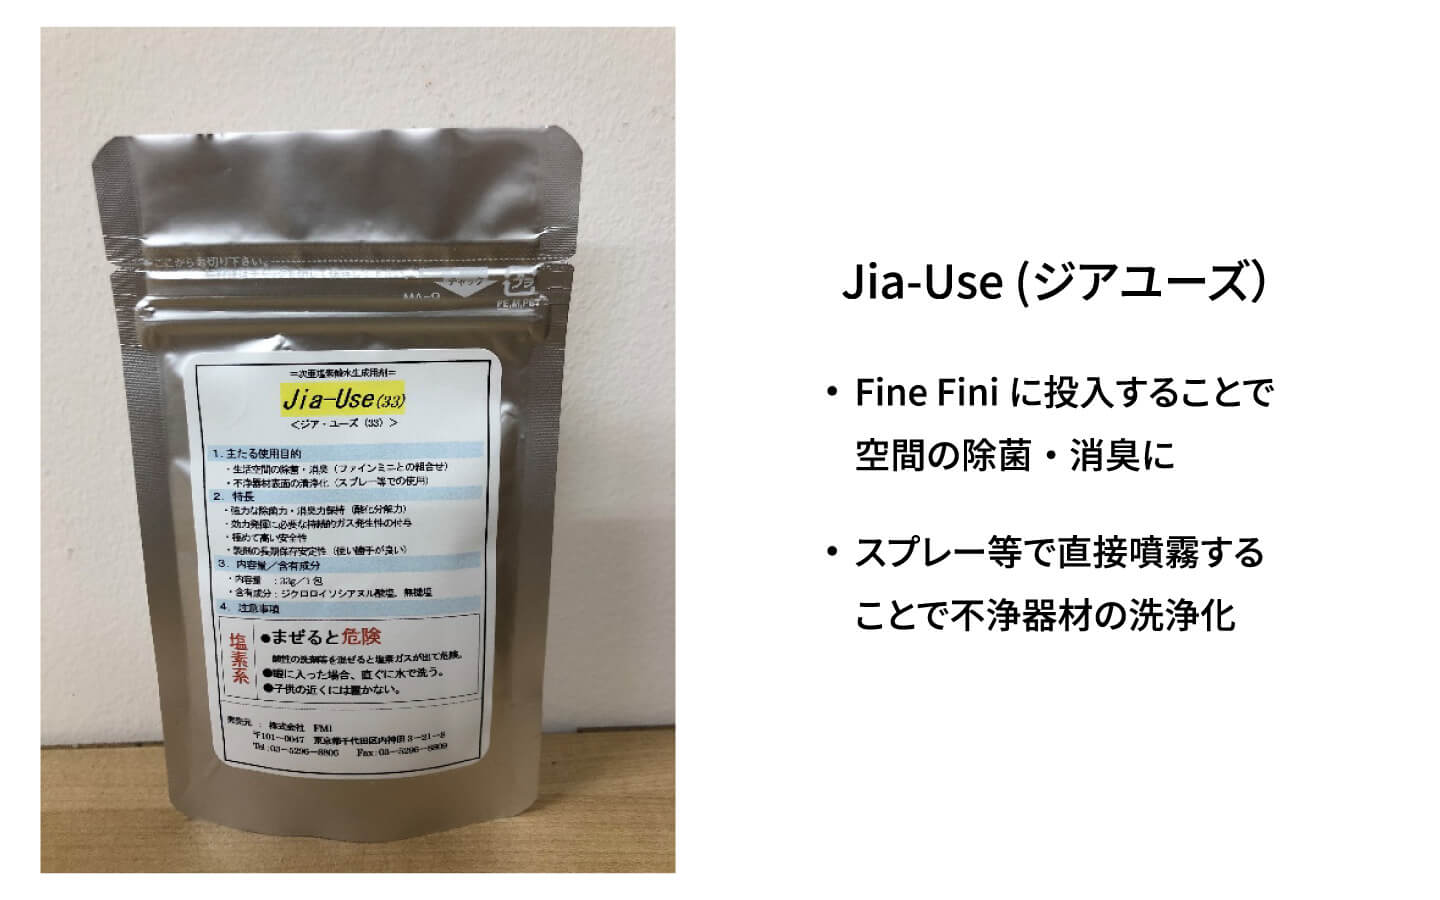 Fine Mini(ファインミニ）＋Jia-Use(ジアユーズ）